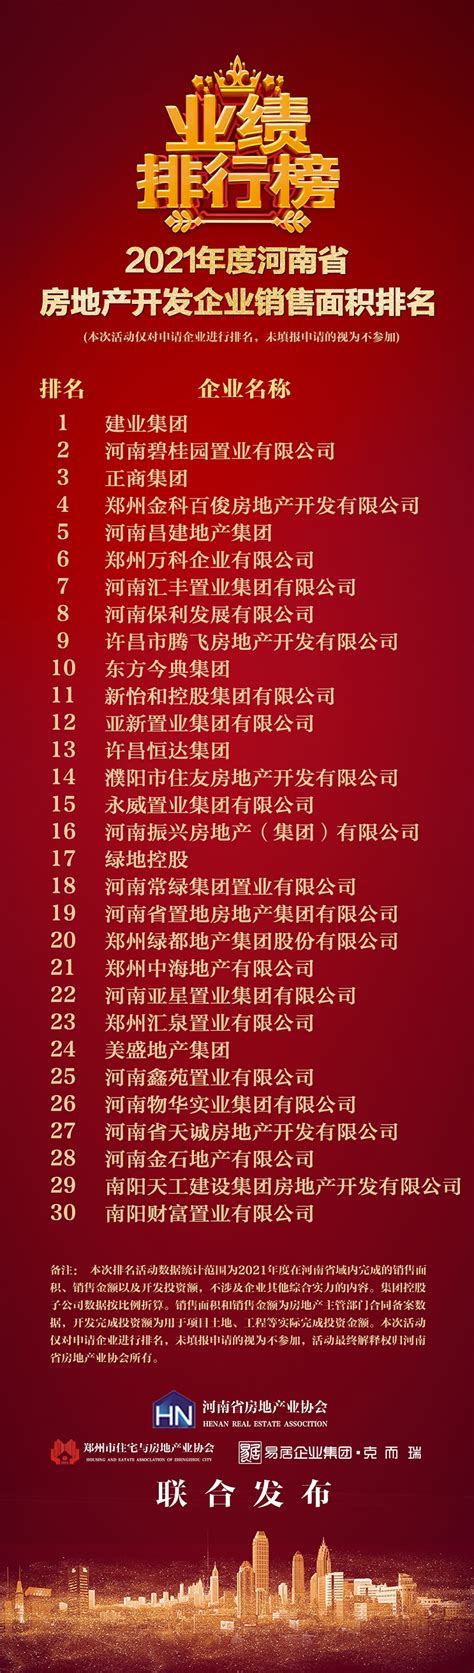 2018河南省大学综合实力排行榜：郑州大学第一 - 高考志愿填报 - 中文搜索引擎指南网